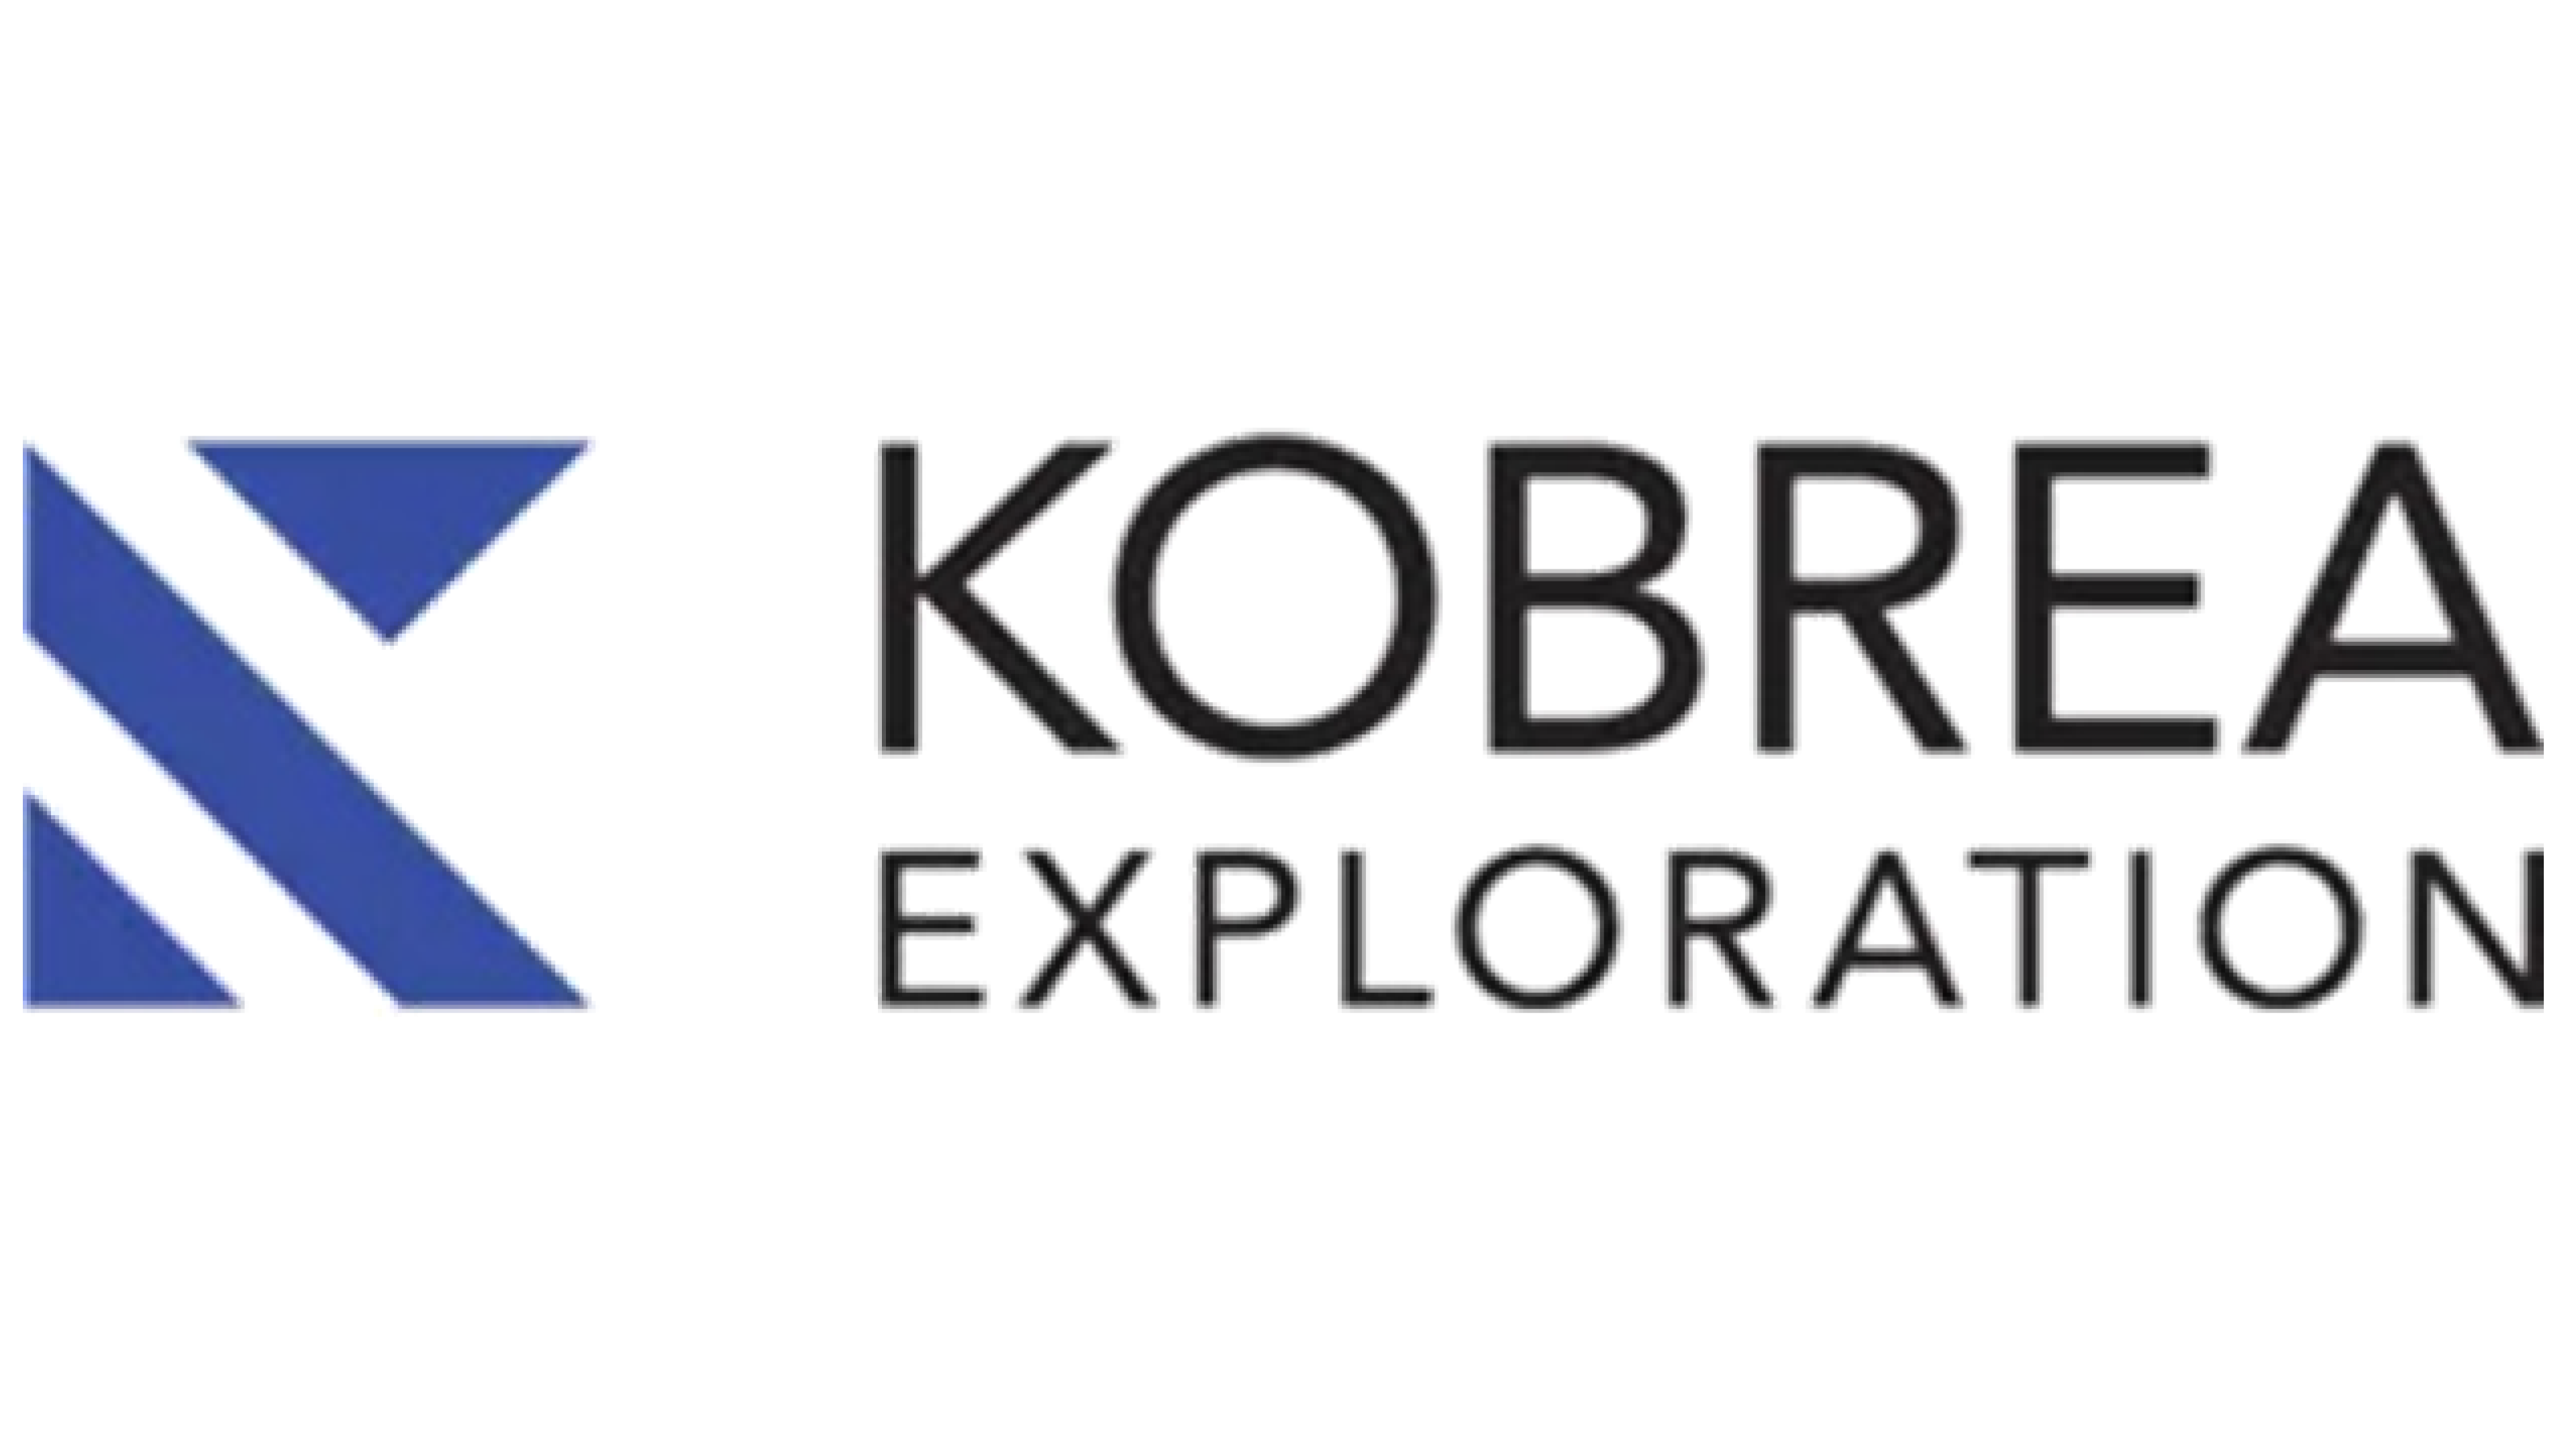 Kobrea Exploration Corp.